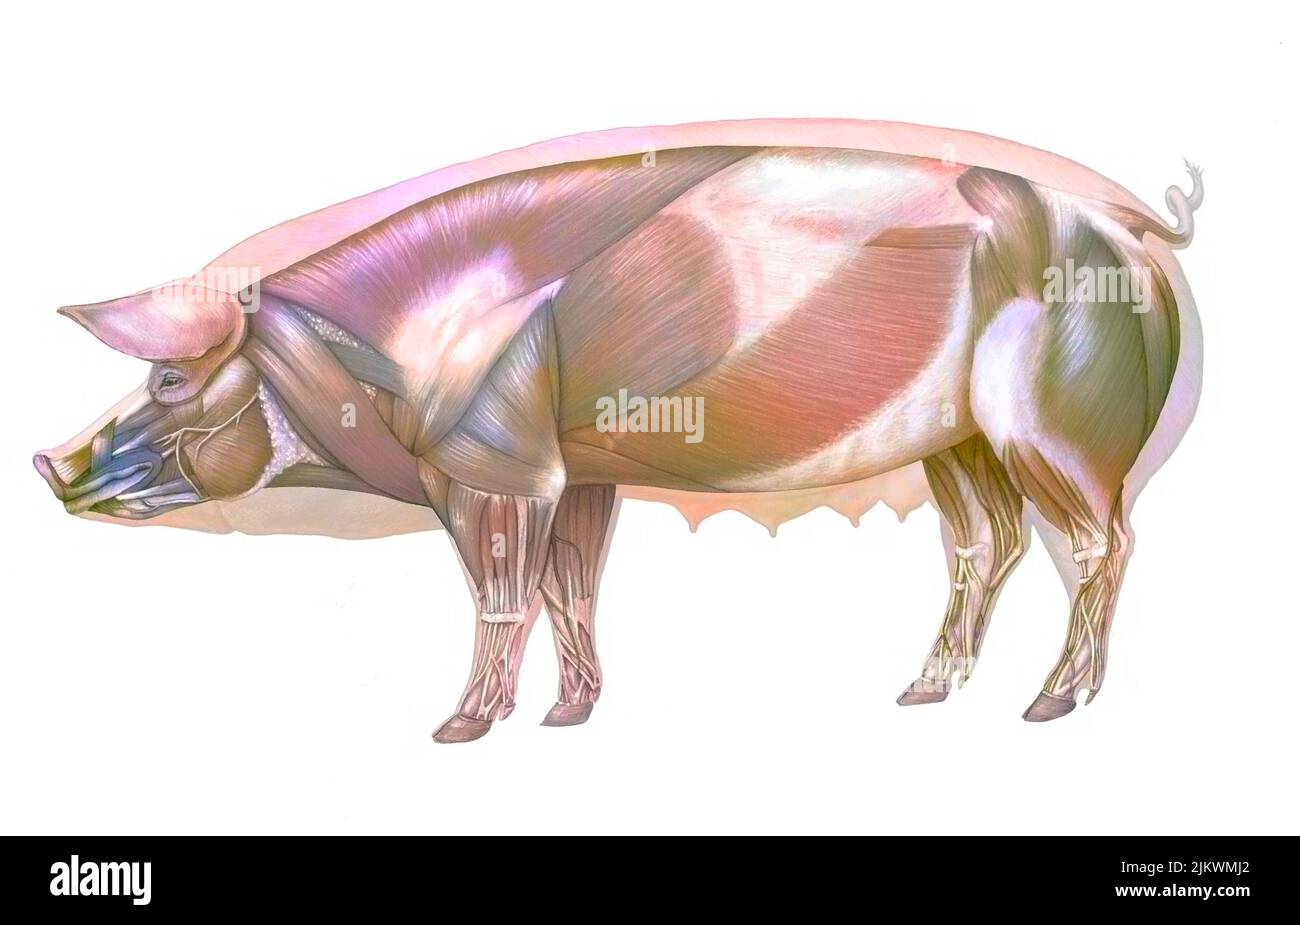 Schwein Anatomie mit seinem muskulären System. Stockfoto